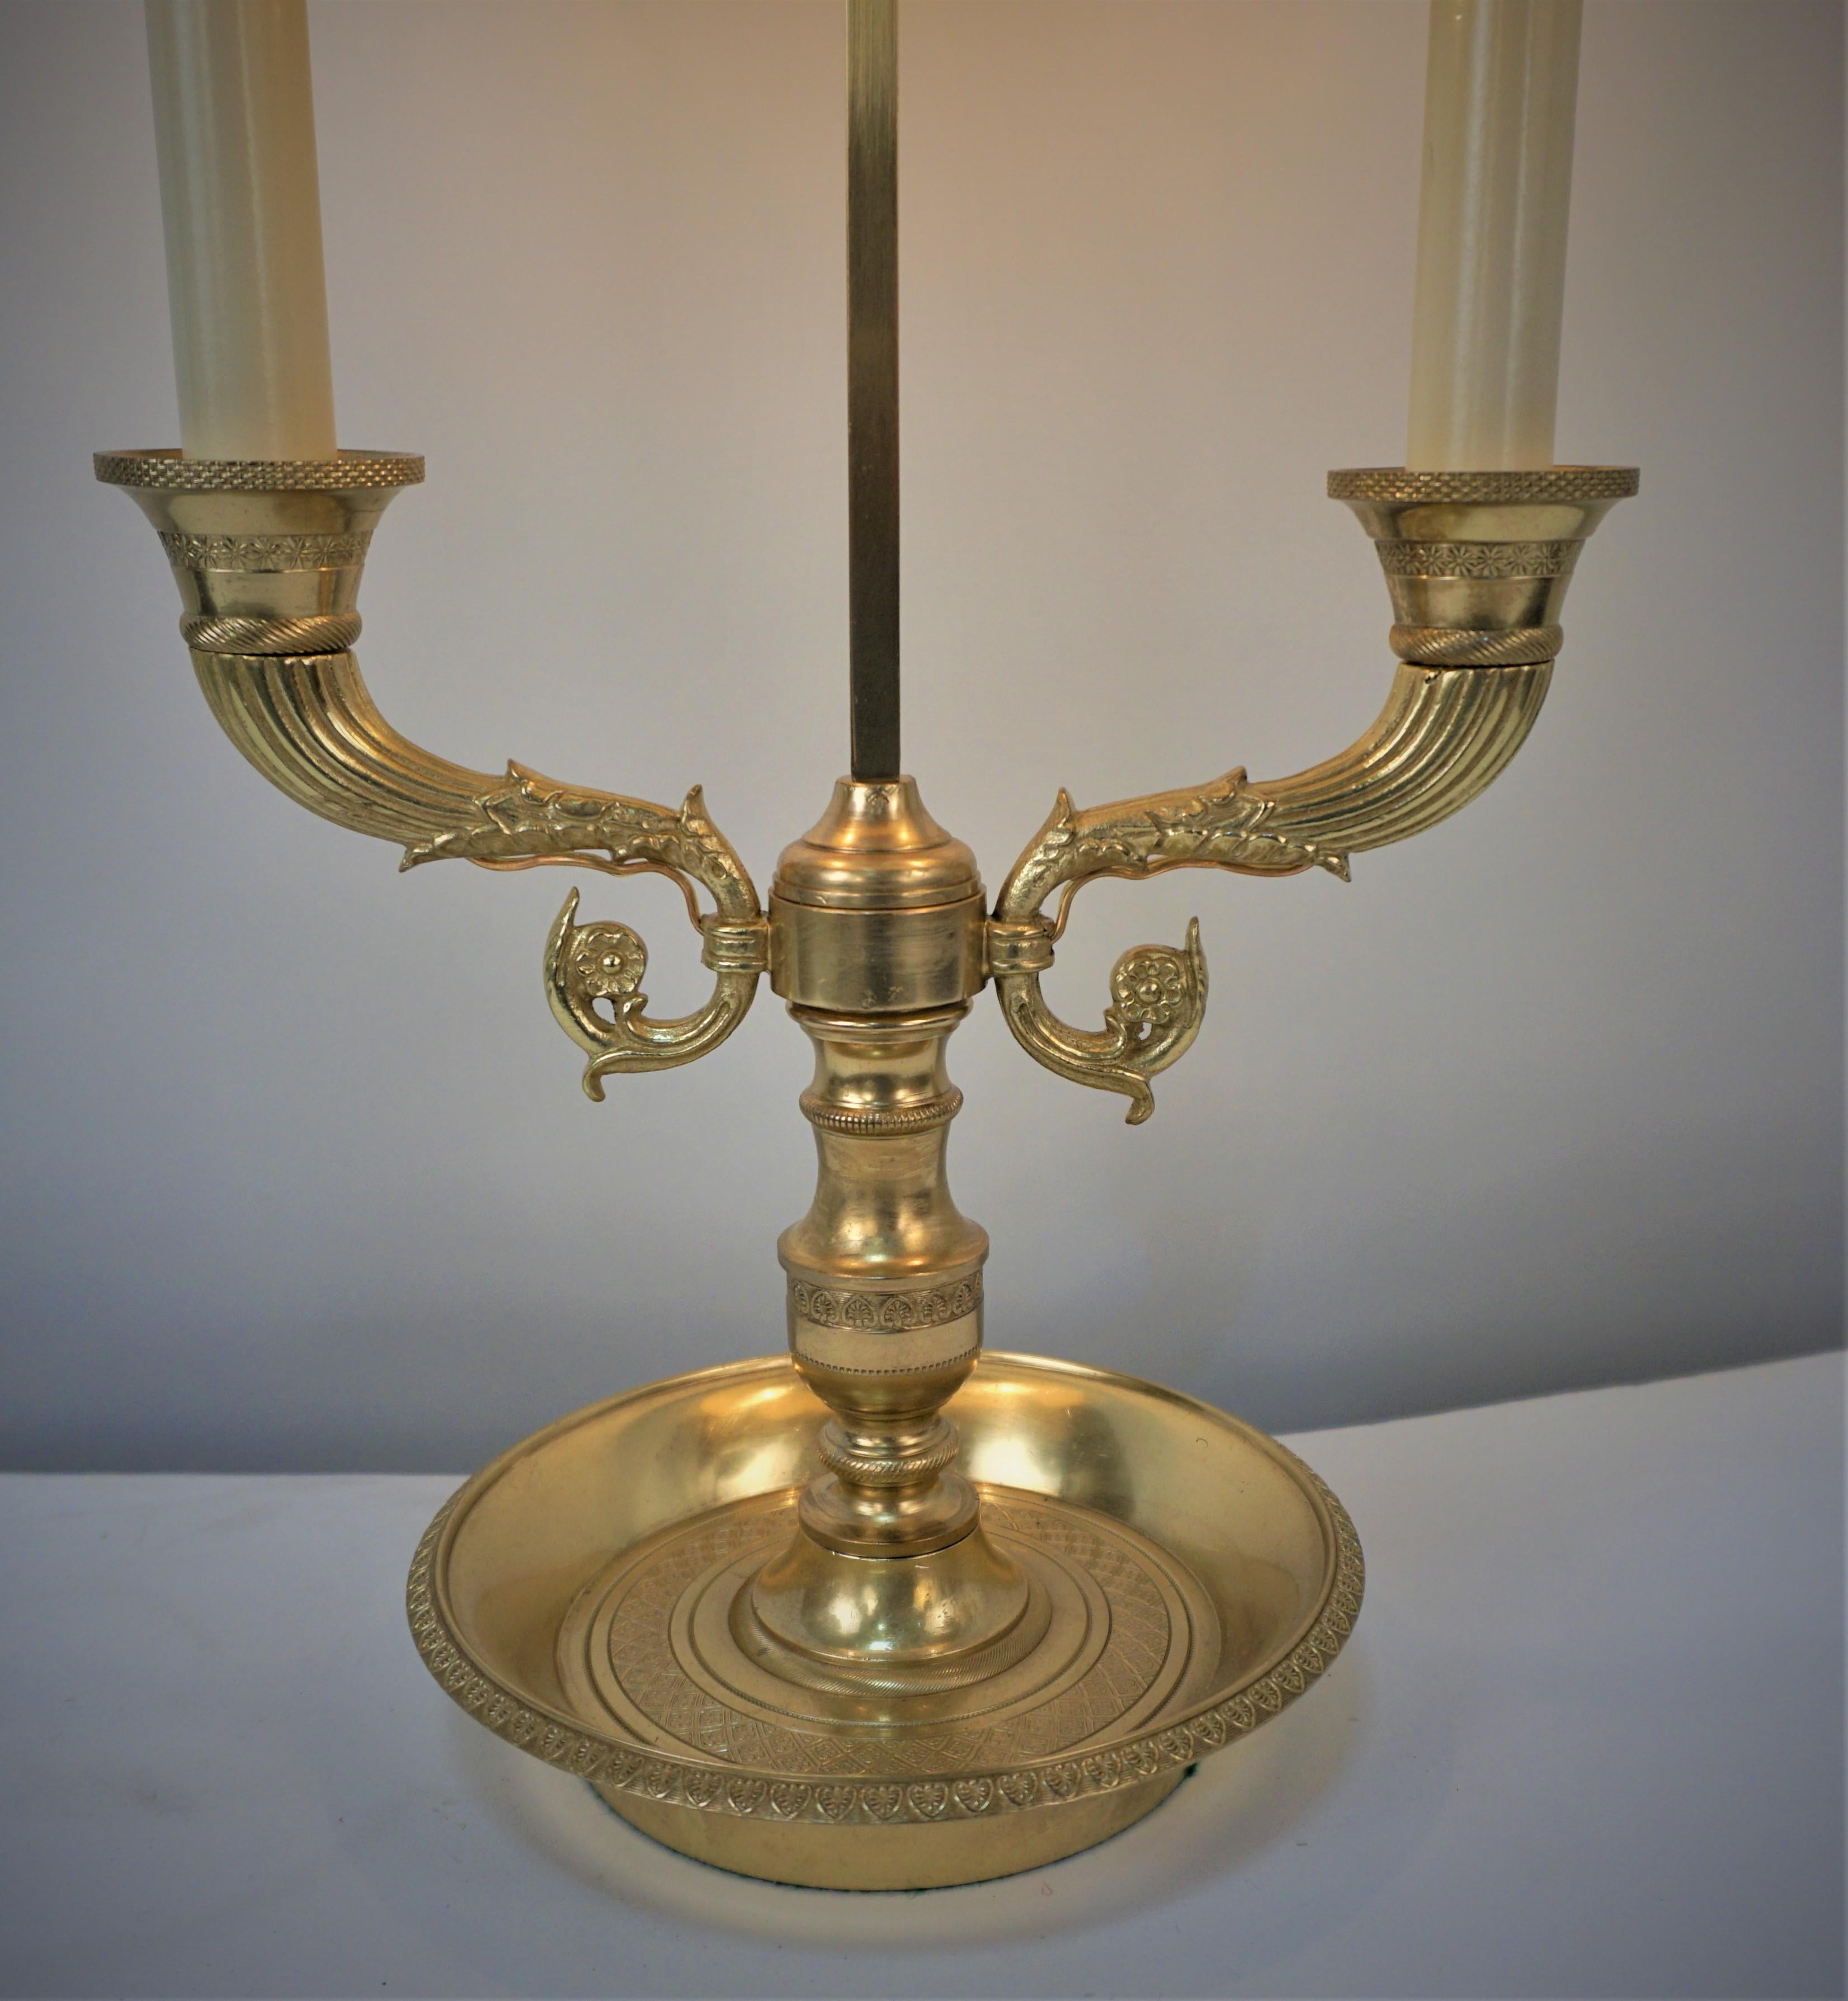 Fabriquée en France au début du XXe siècle, cette lampe de table est dotée d'une magnifique base de candélabre en bronze. La lampe a été professionnellement électrifiée et restaurée et possède deux lumières.